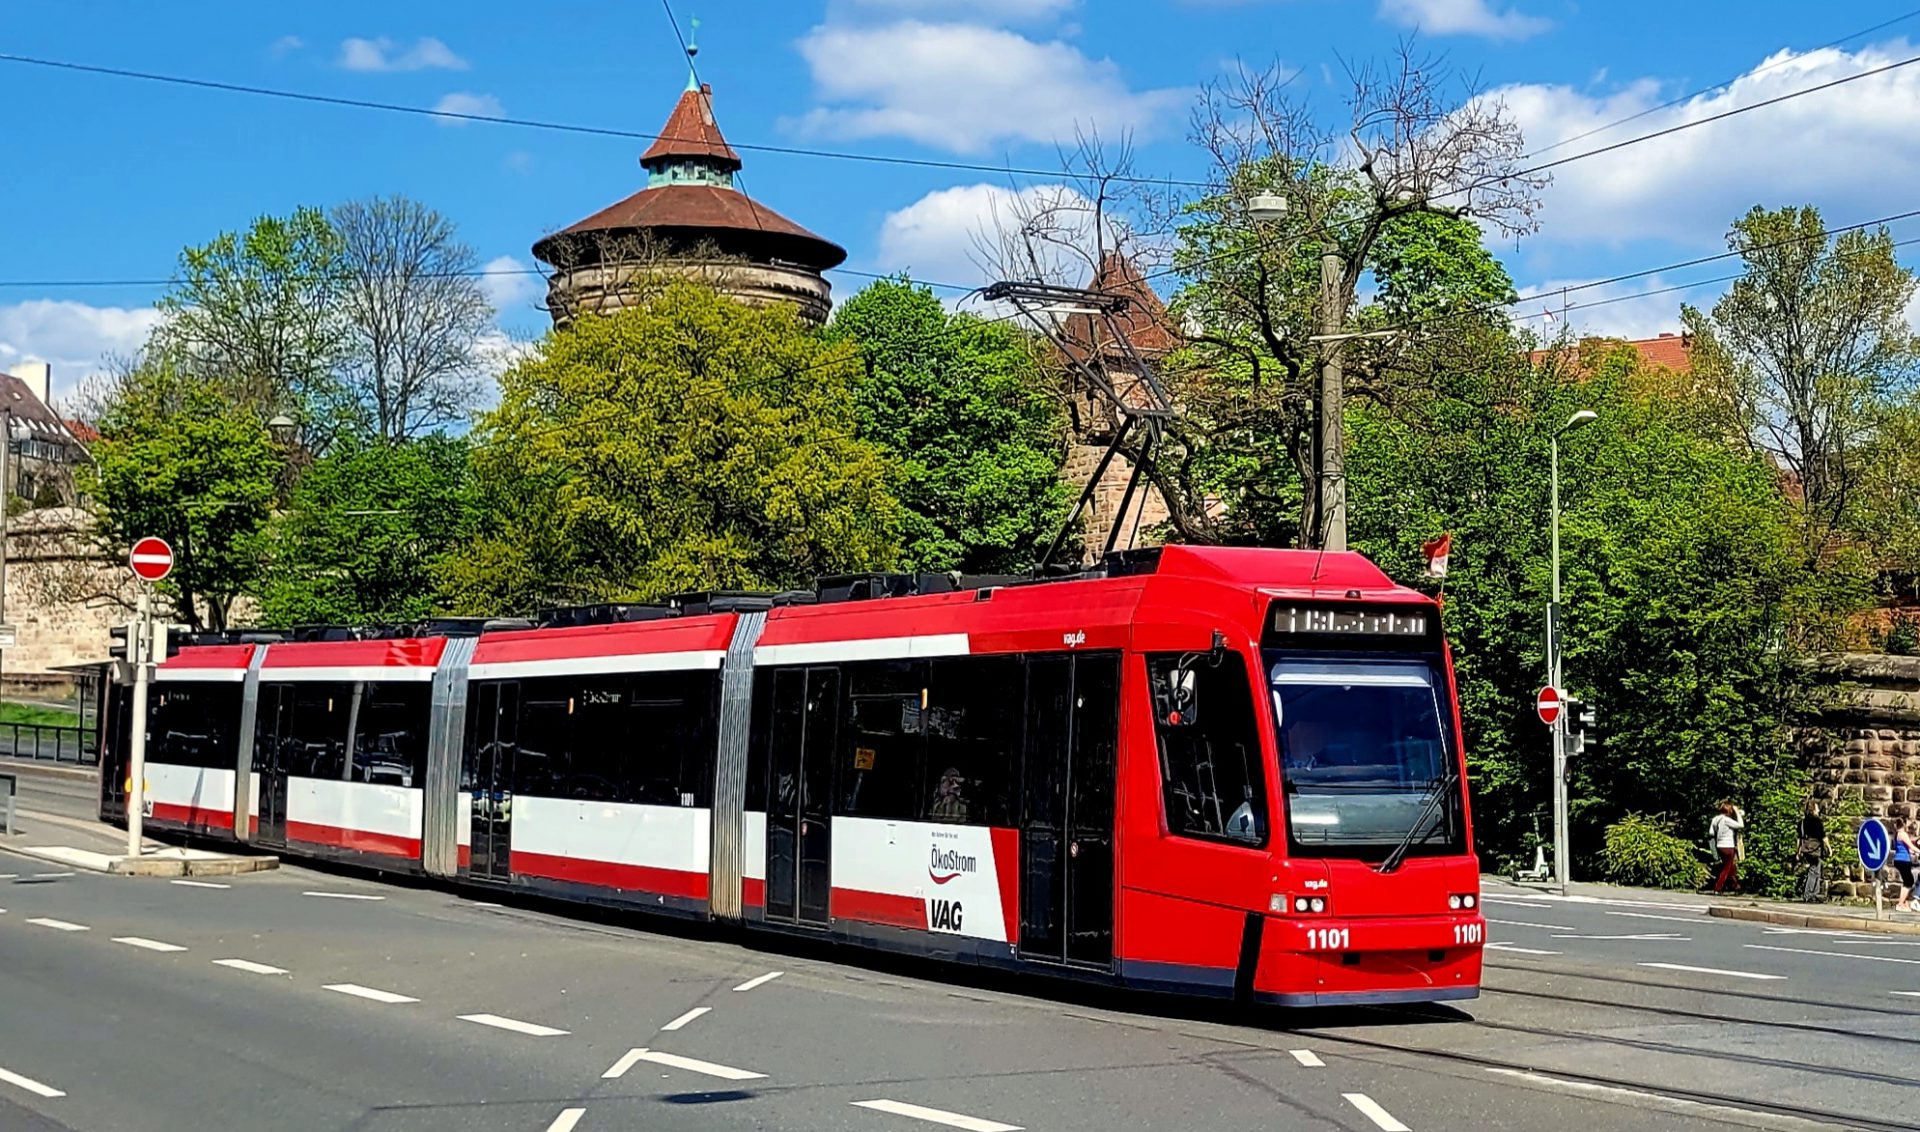 Straßenbahn im Vordergrund, im Hintergrund die Nürnberger Stadtmauer und Bäume.